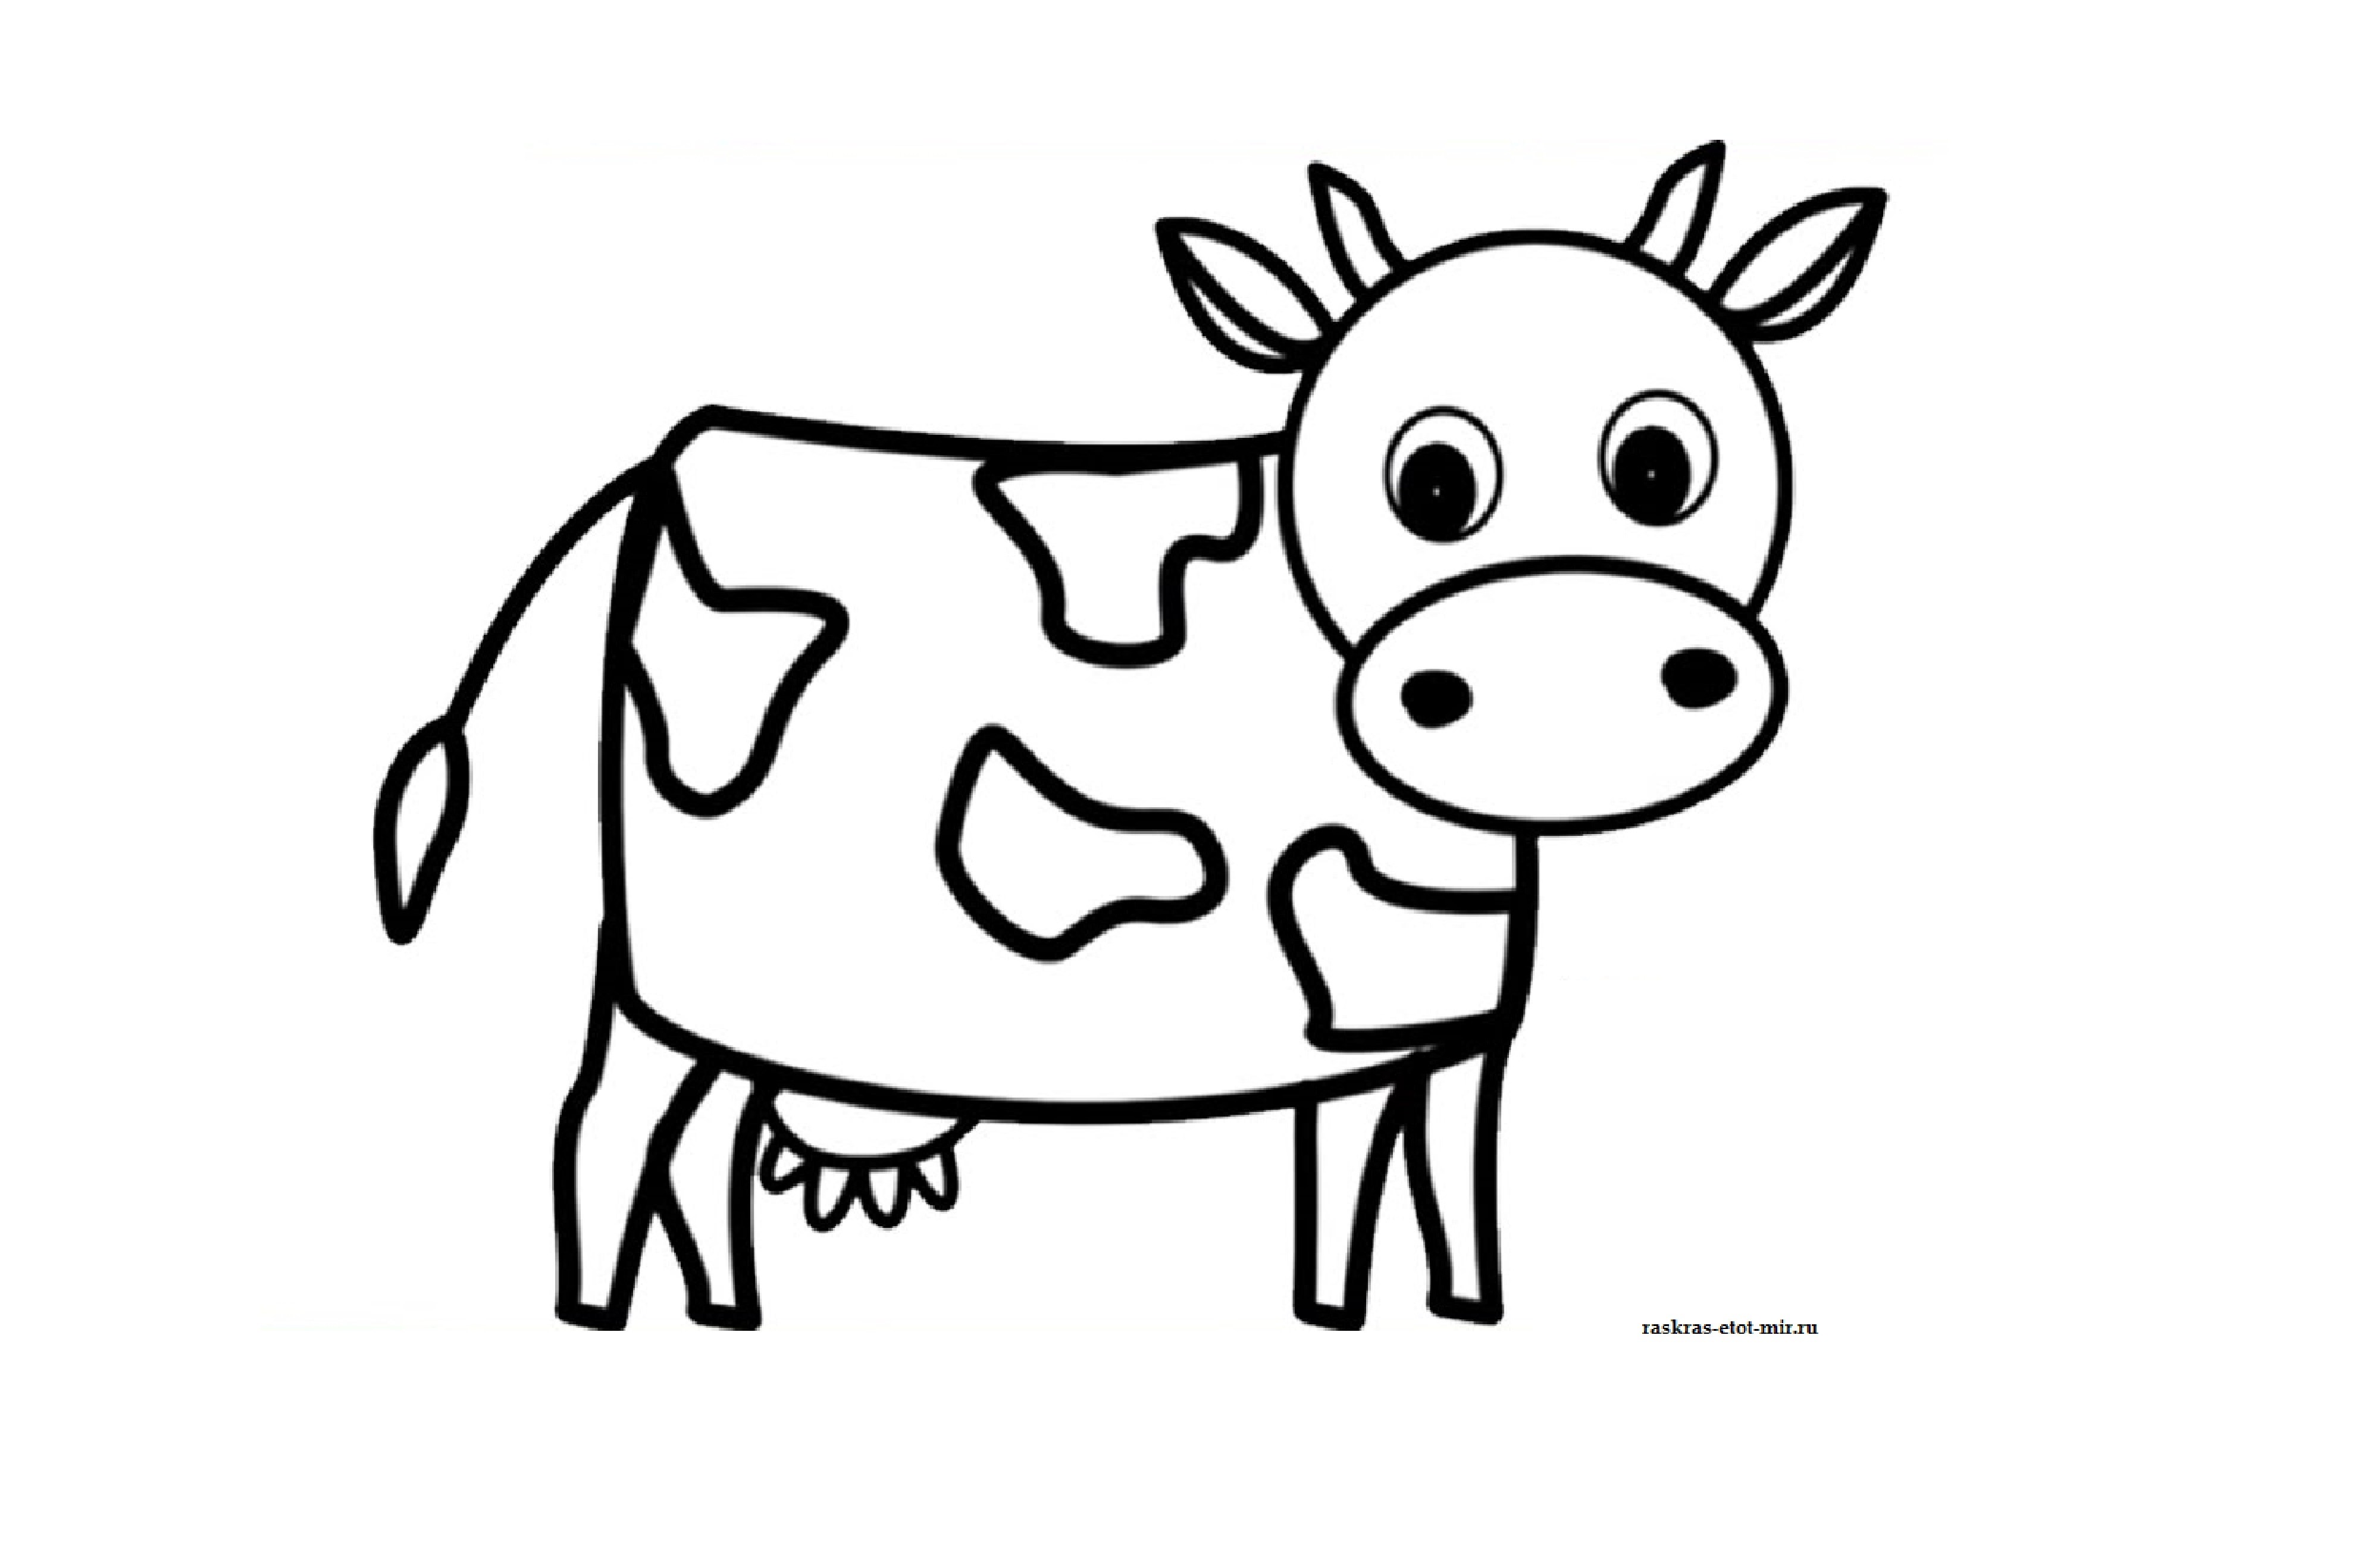 Распечатать коровку раскраску. Раскраска корова. Корова раскраска для детей. Рисунок коровы для срисовки. Корова картинка для детей раскраска.